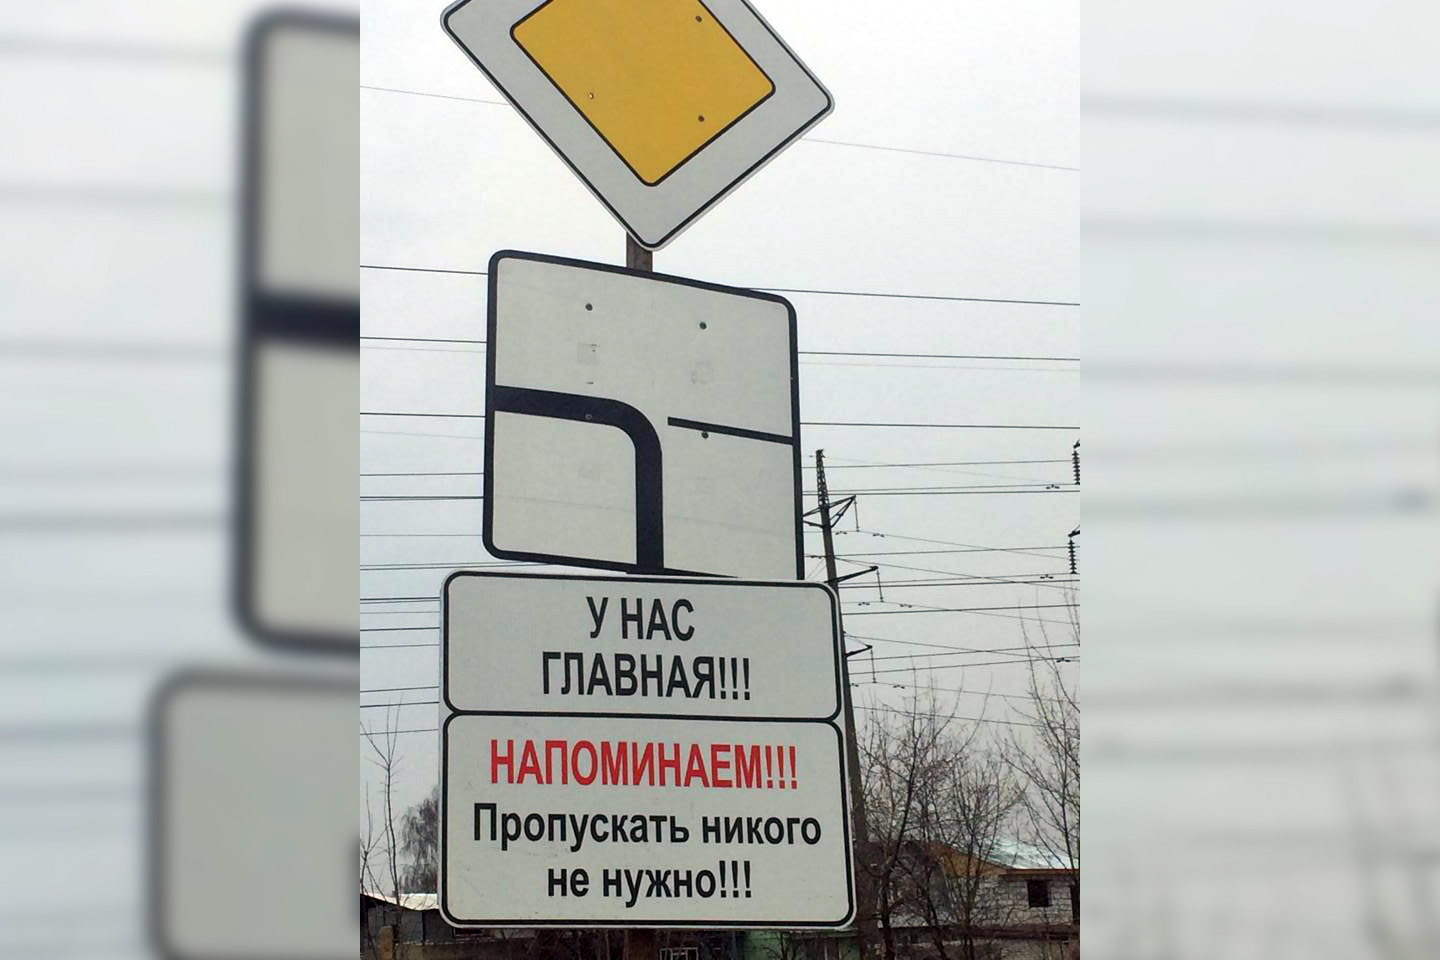 «У нас главная!» Новый дорожный знак появился в Нижнем Новгороде